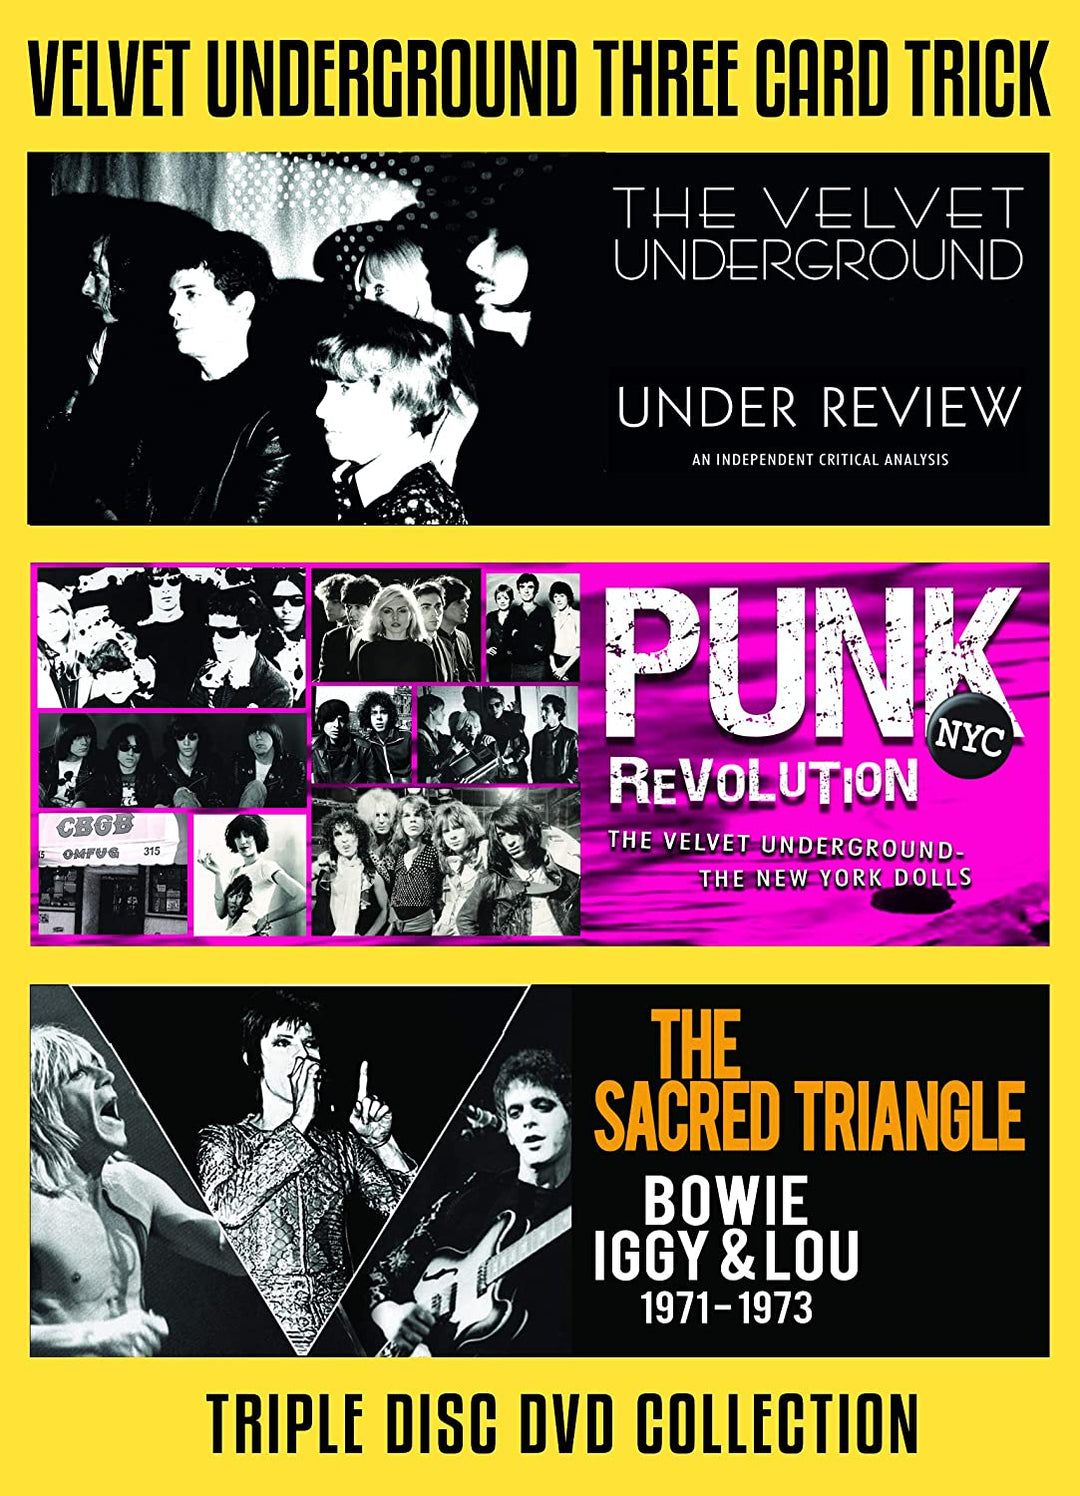 Velvet Underground - 3 Card Trick [2021] [DVD]